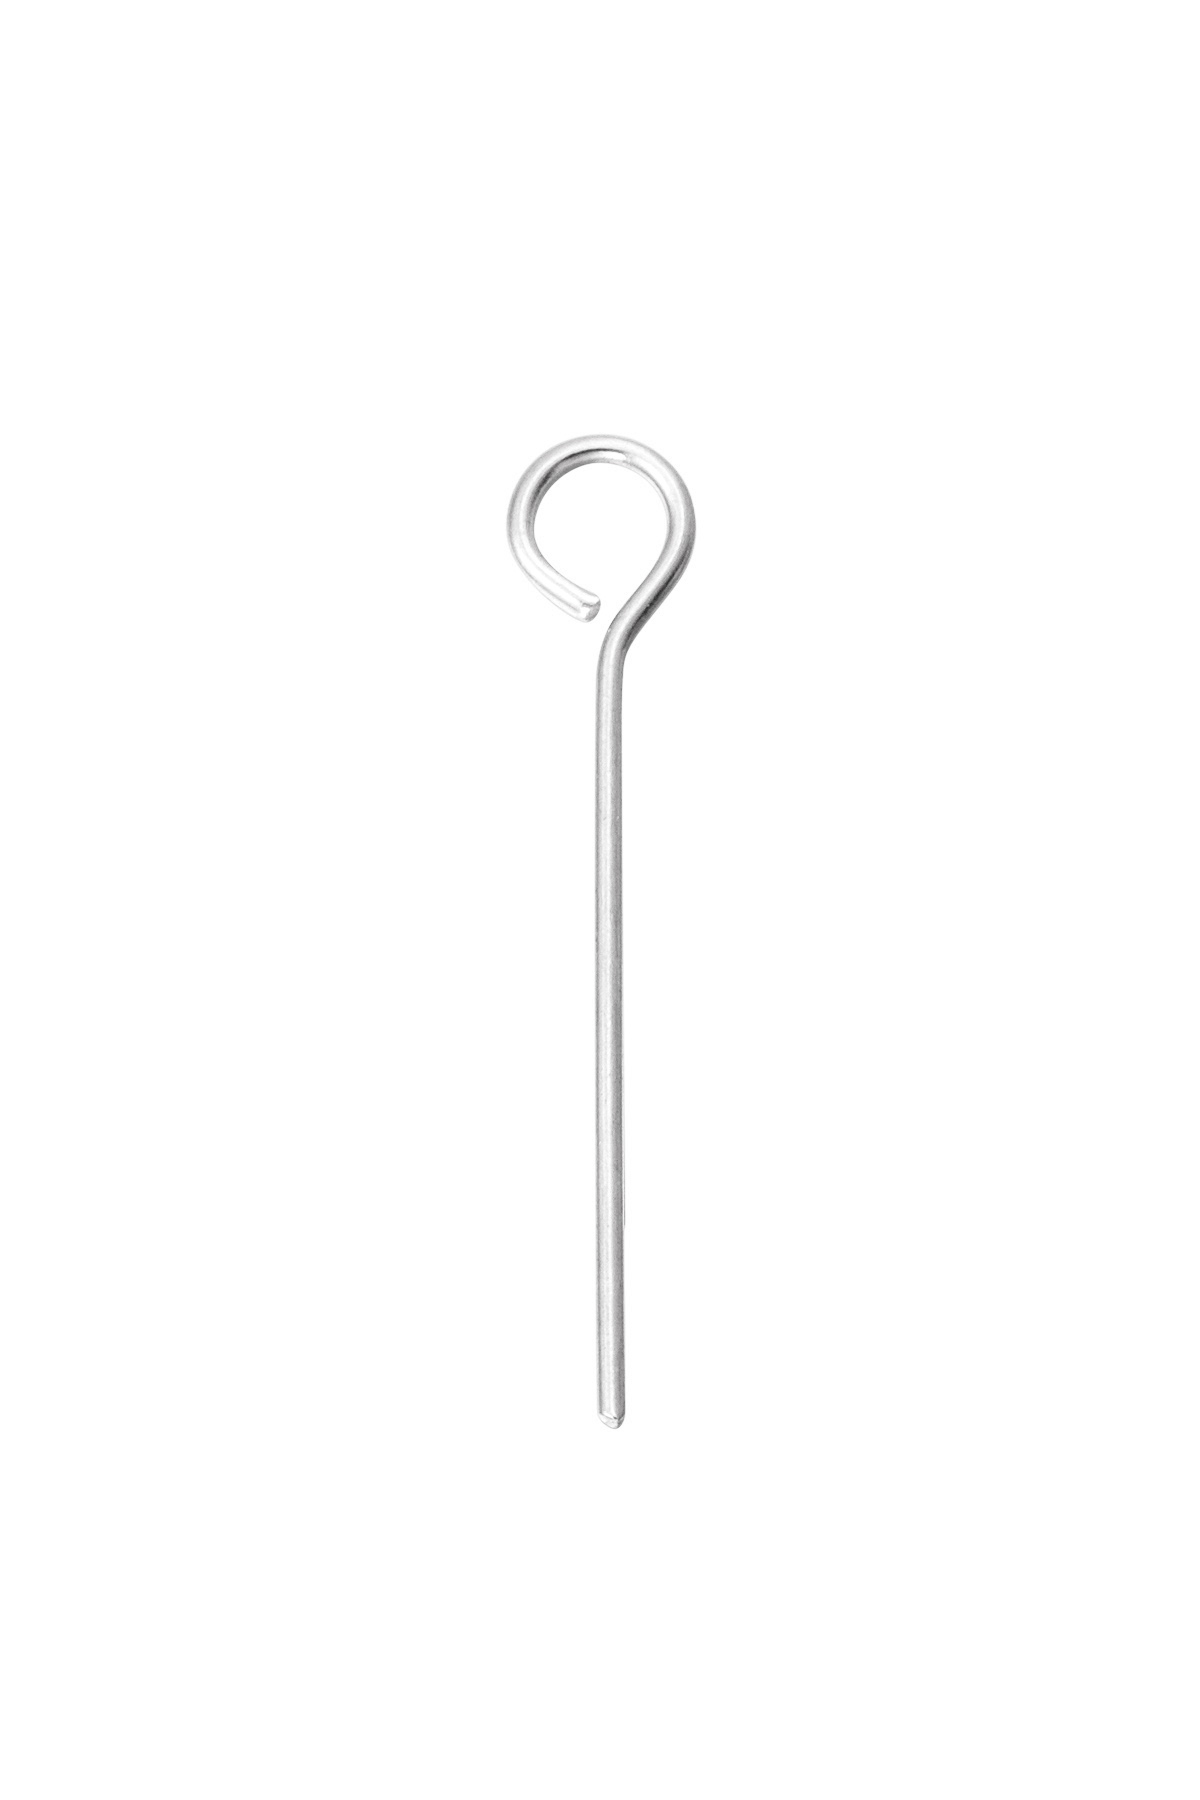 DIY Loop Curved Needle 2.0 - Silver h5 